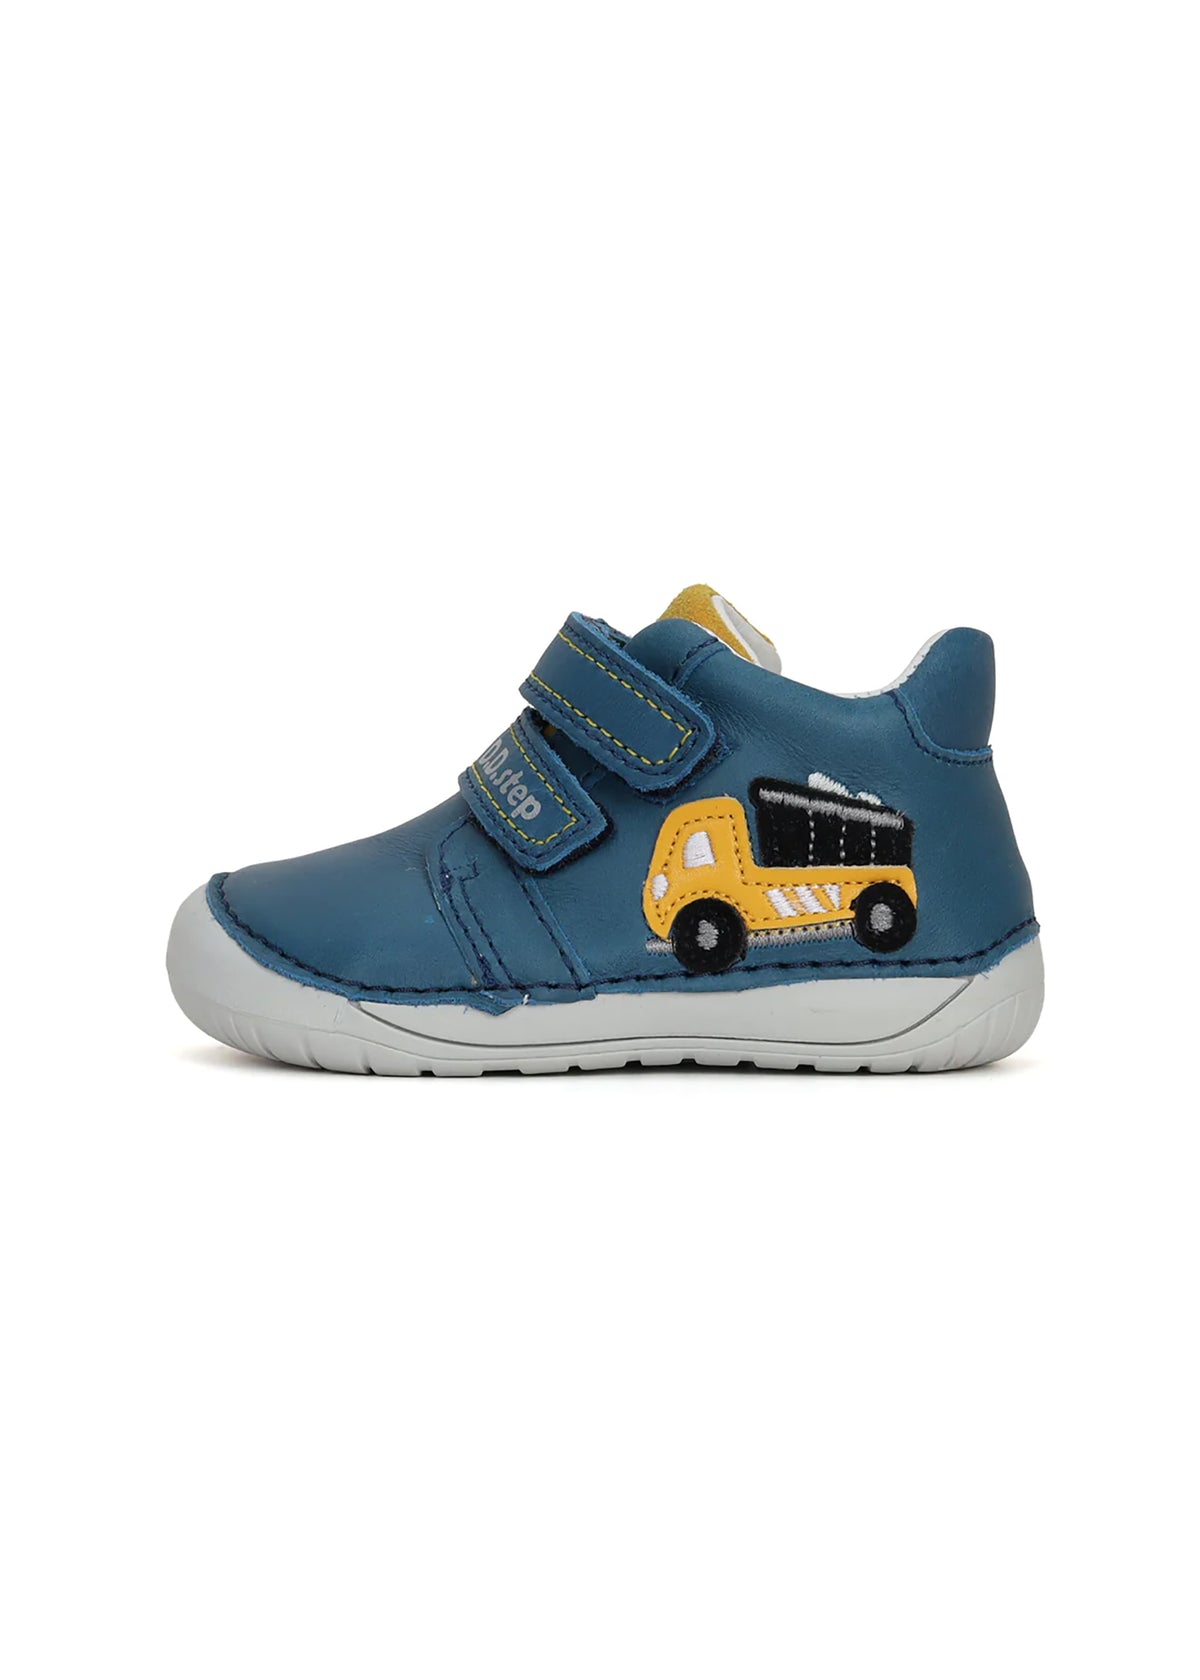 Barns första stegsskor - blått läder, gul lastbil